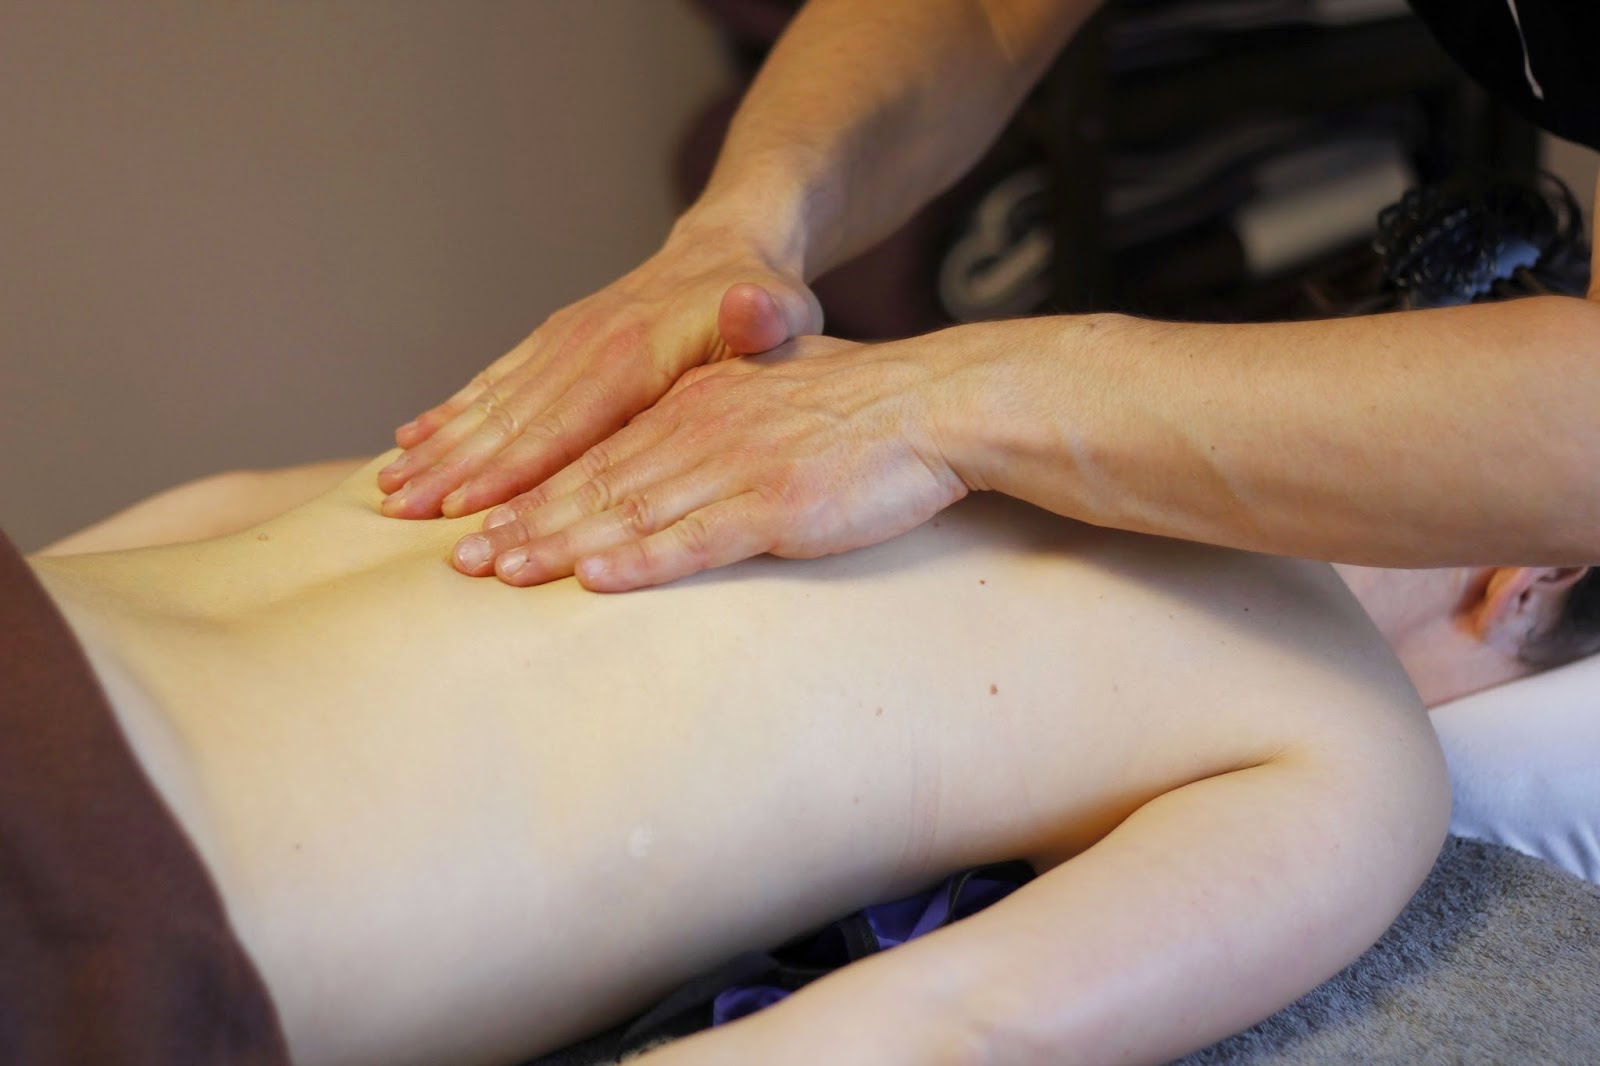 comment devenir praticien massage bien etre